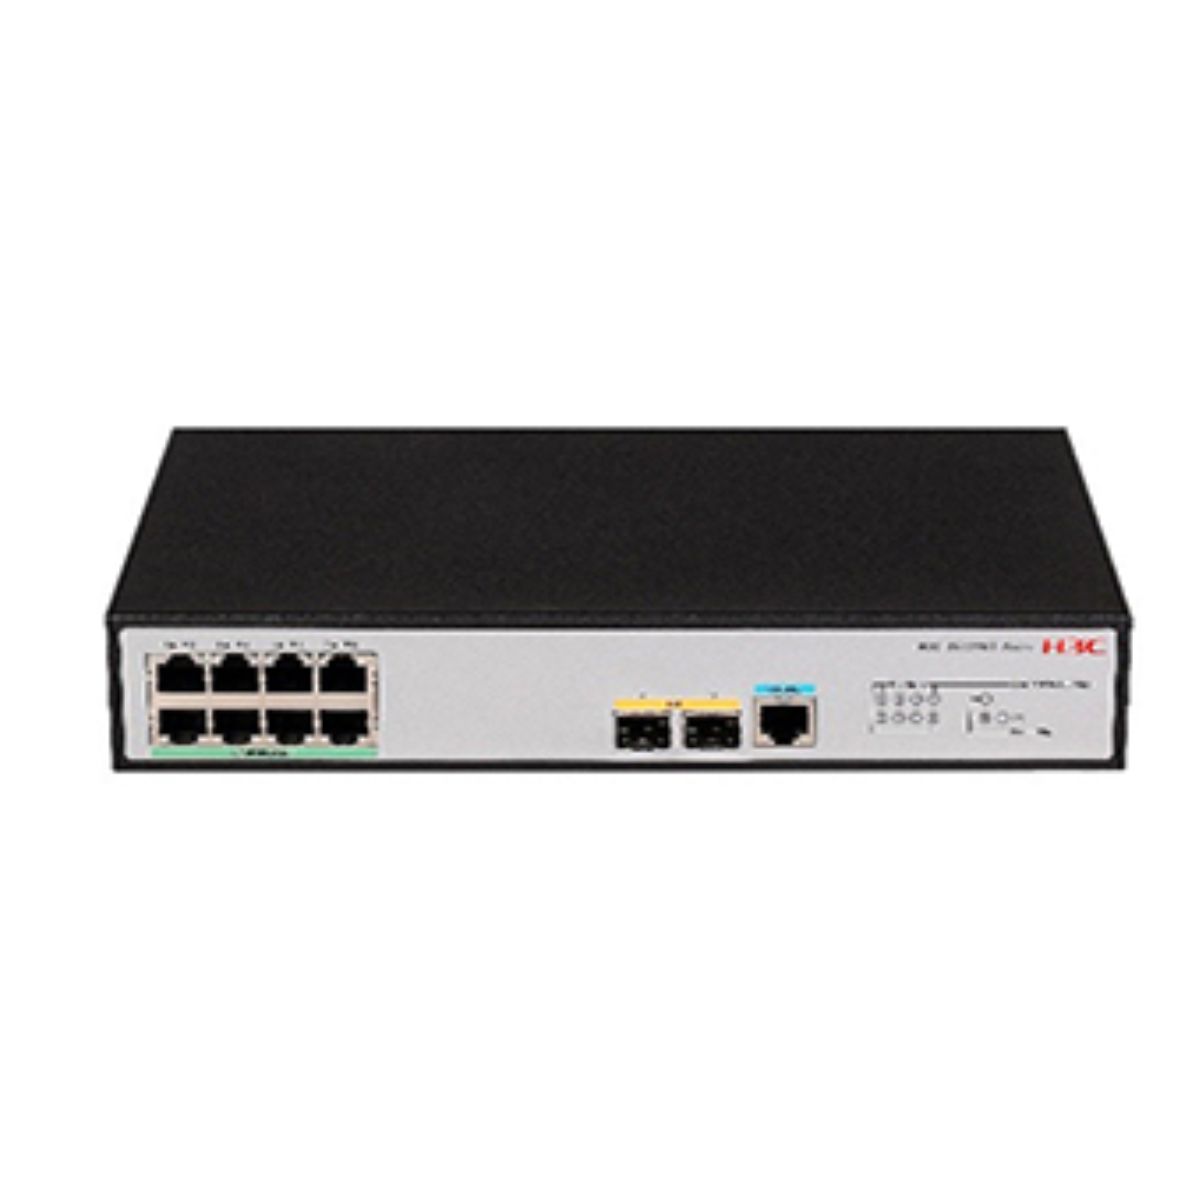 Switch chia mạng H3C S5120V3-10P-PWR-LI 8 cổng 10/100/1000TX, 2 cổng SFP, tốc độ chuyển tiếp 15Mpps